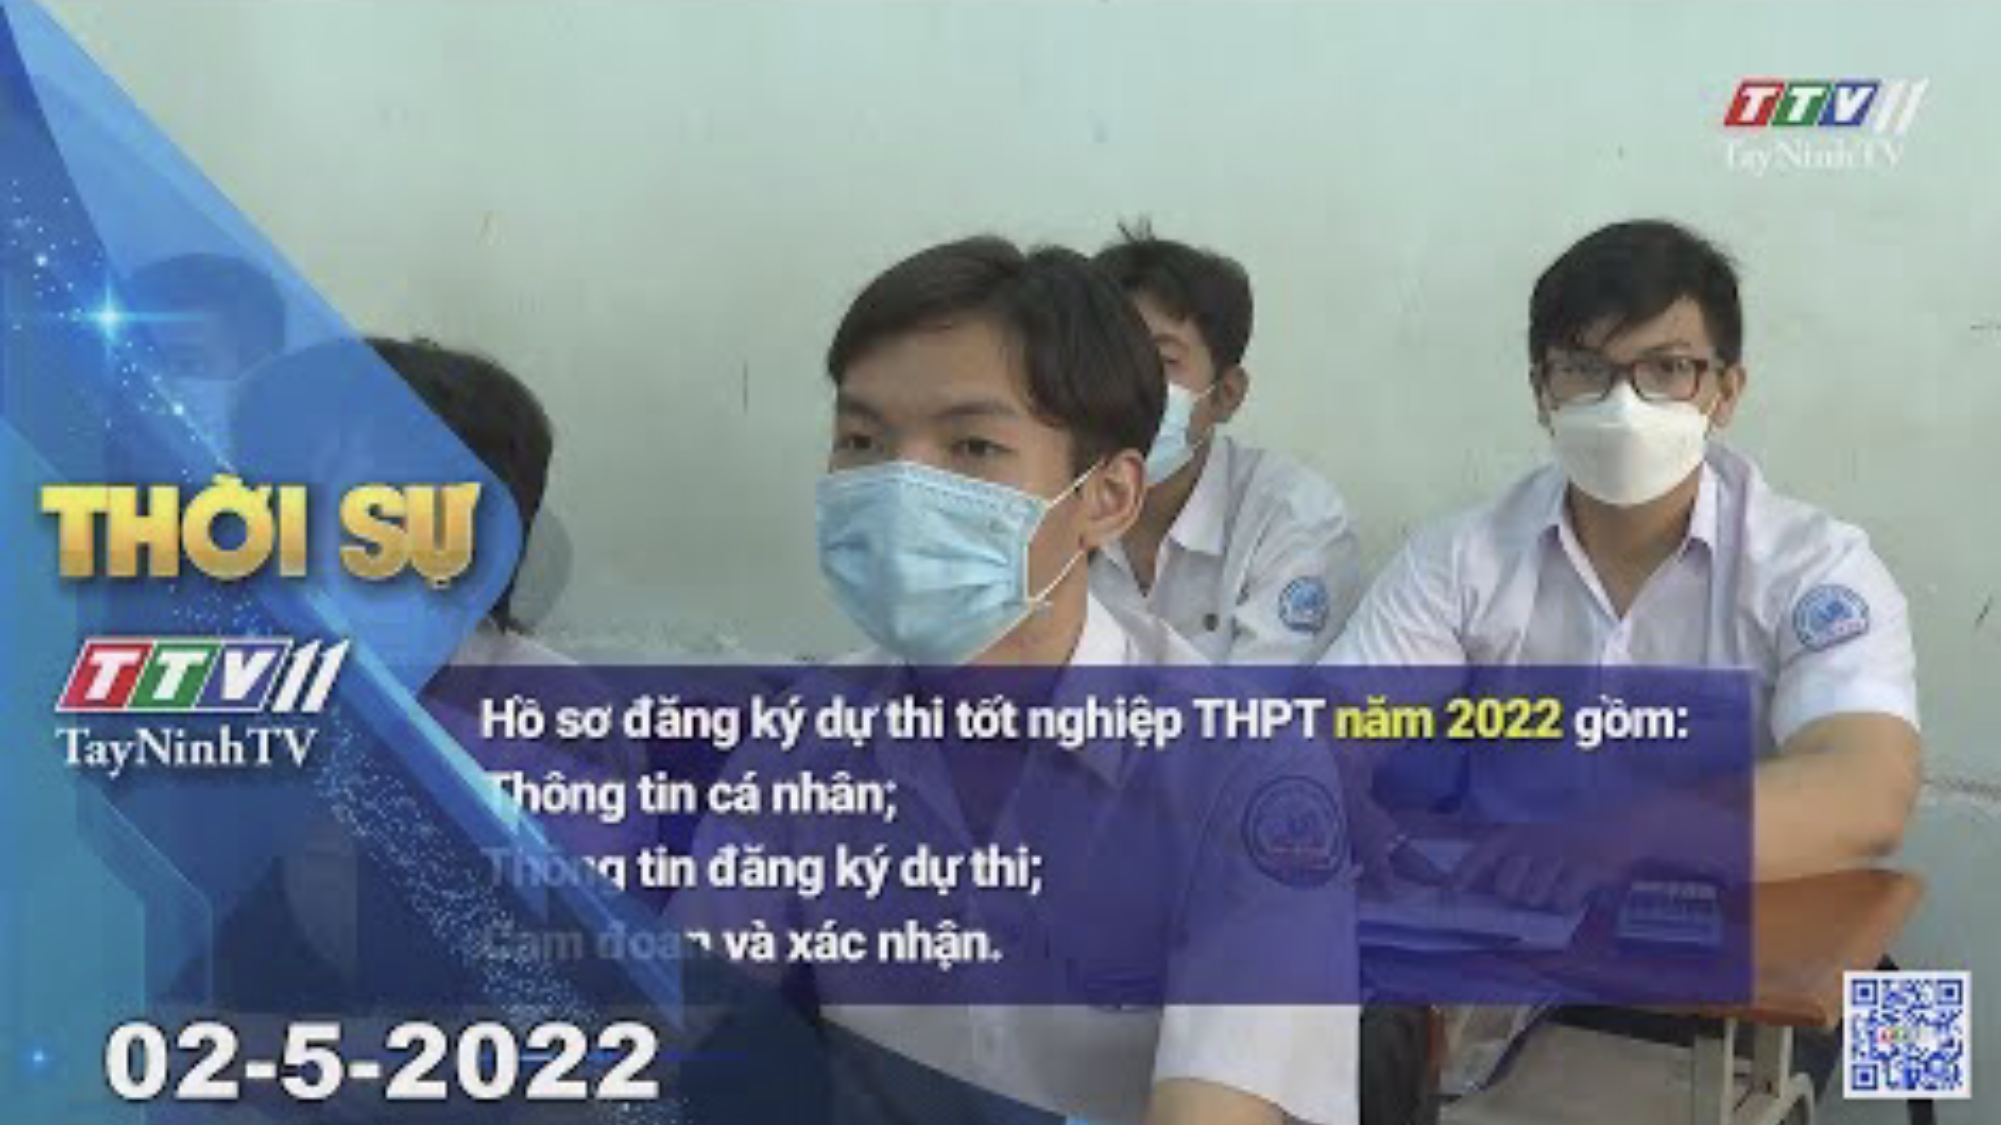 Thời sự Tây Ninh 02-5-2022 | Tin tức hôm nay | TayNinhTV